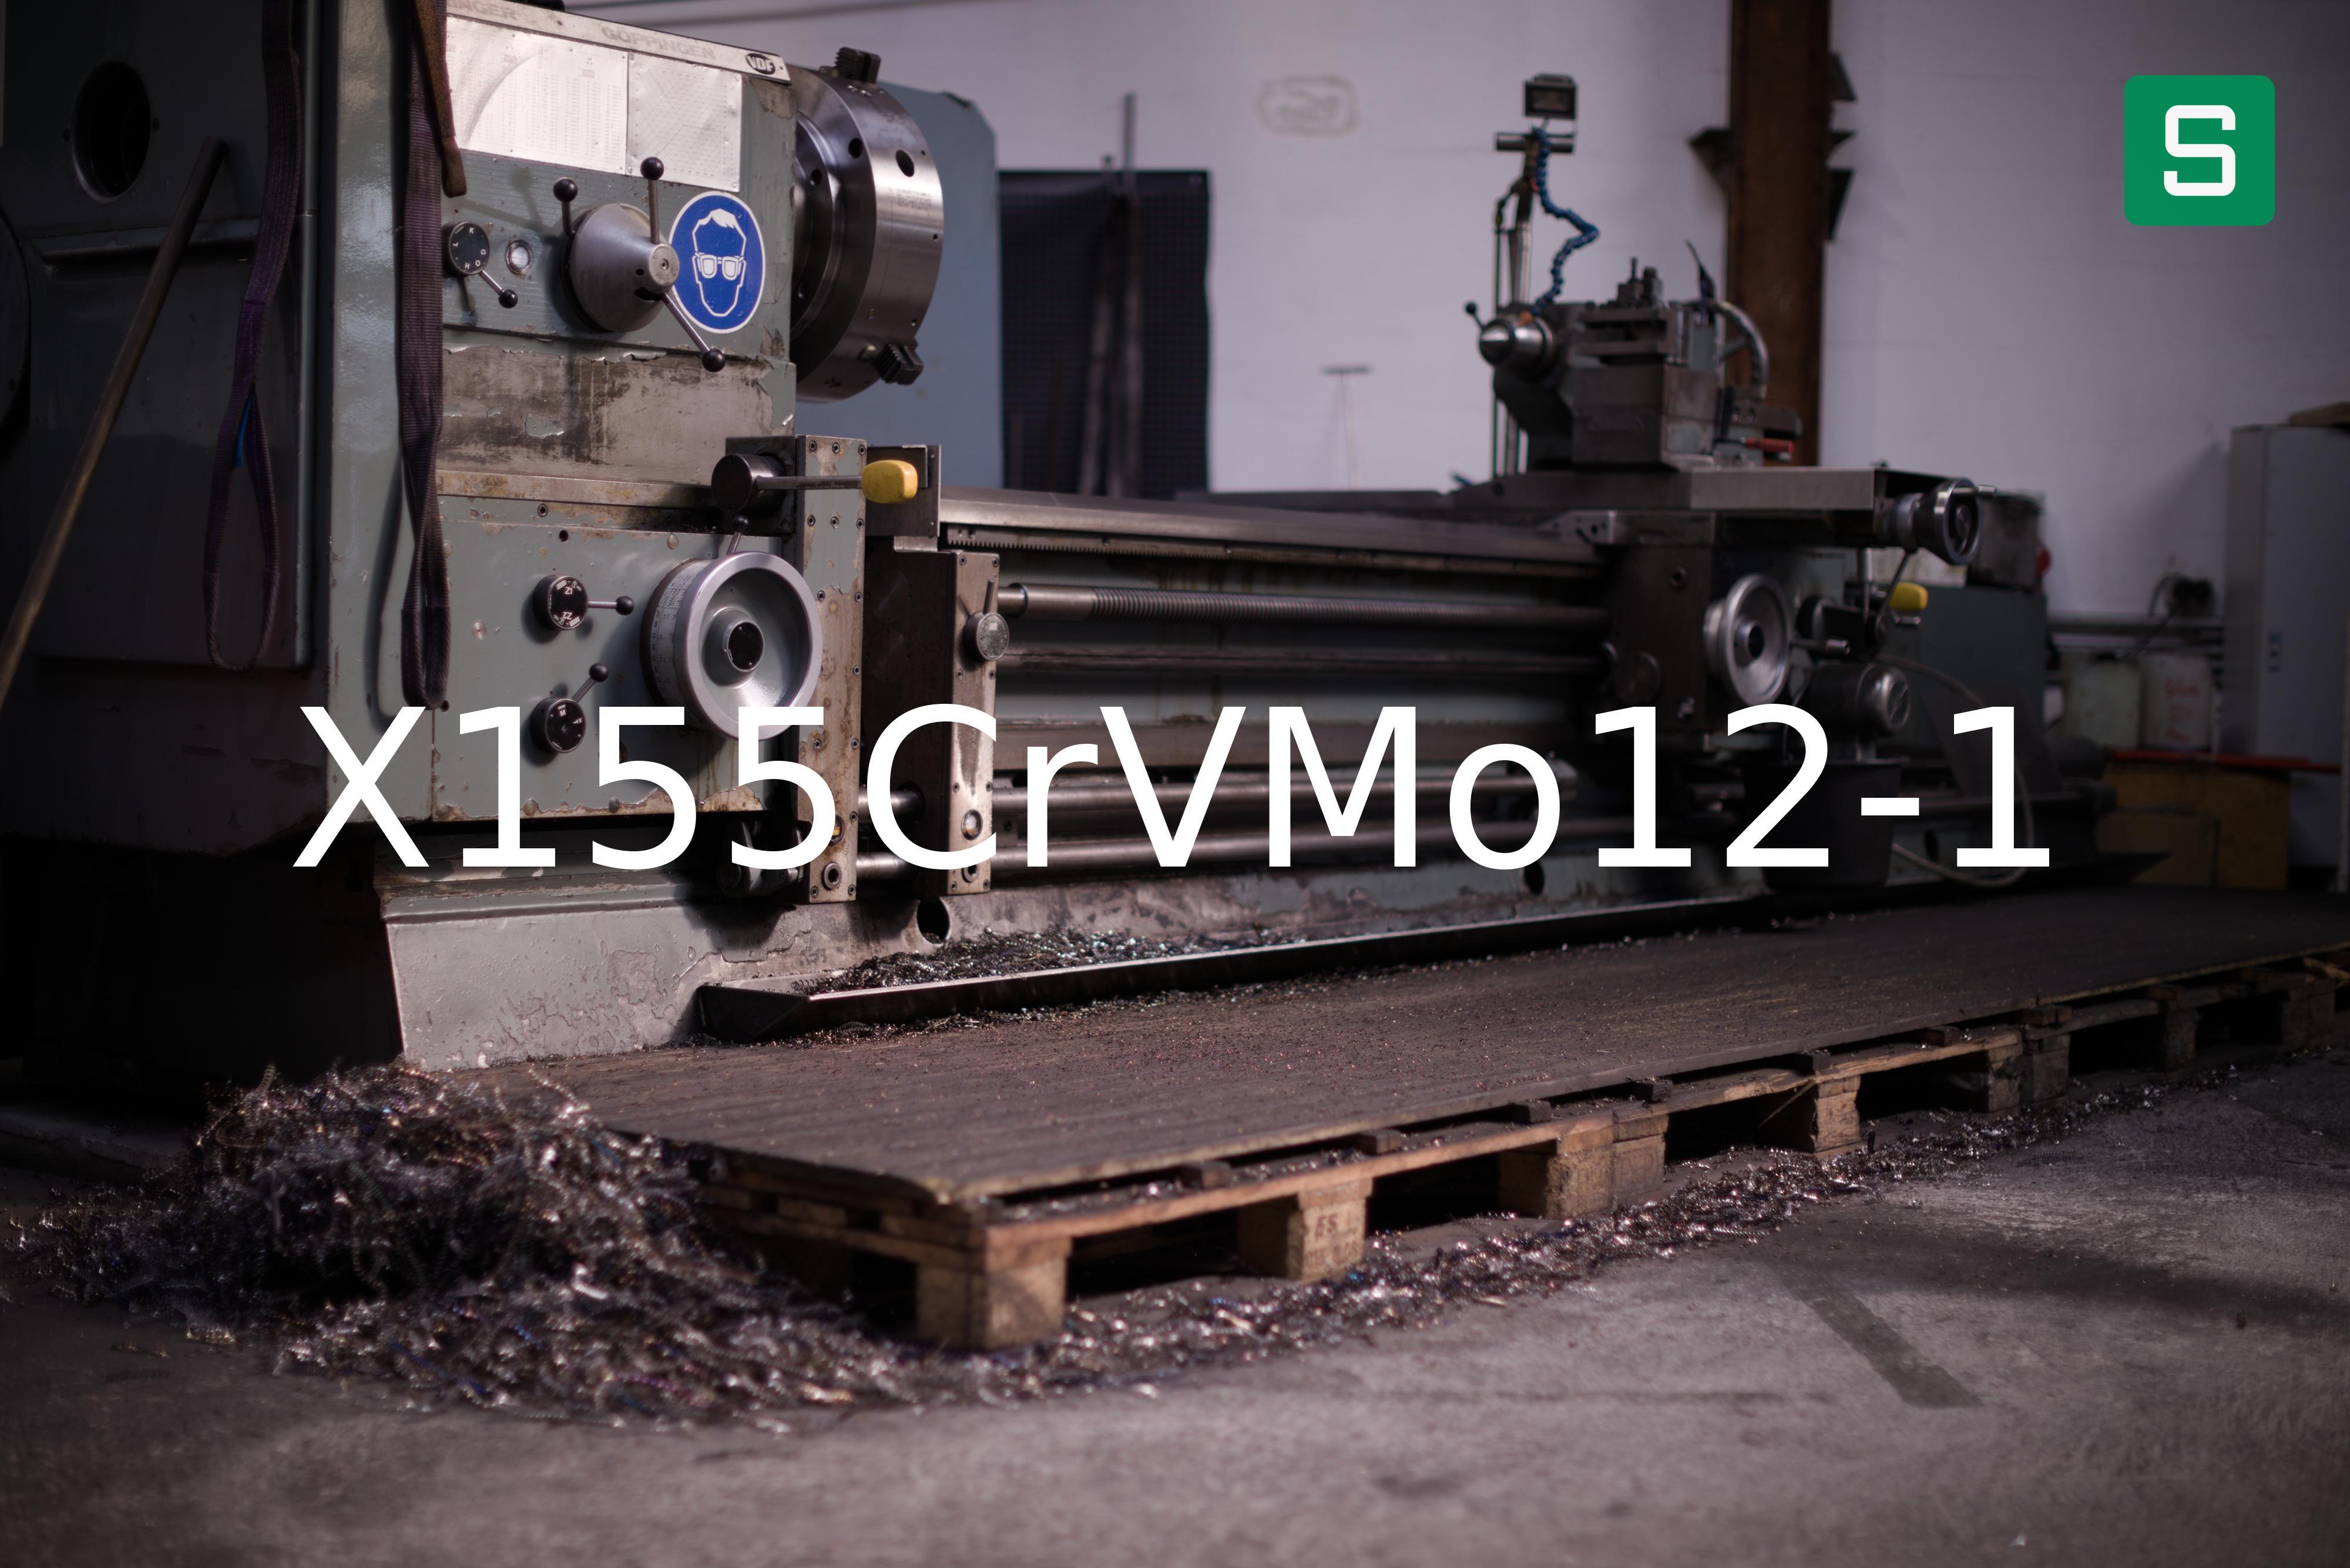 Steel Material: X155CrVMo12-1